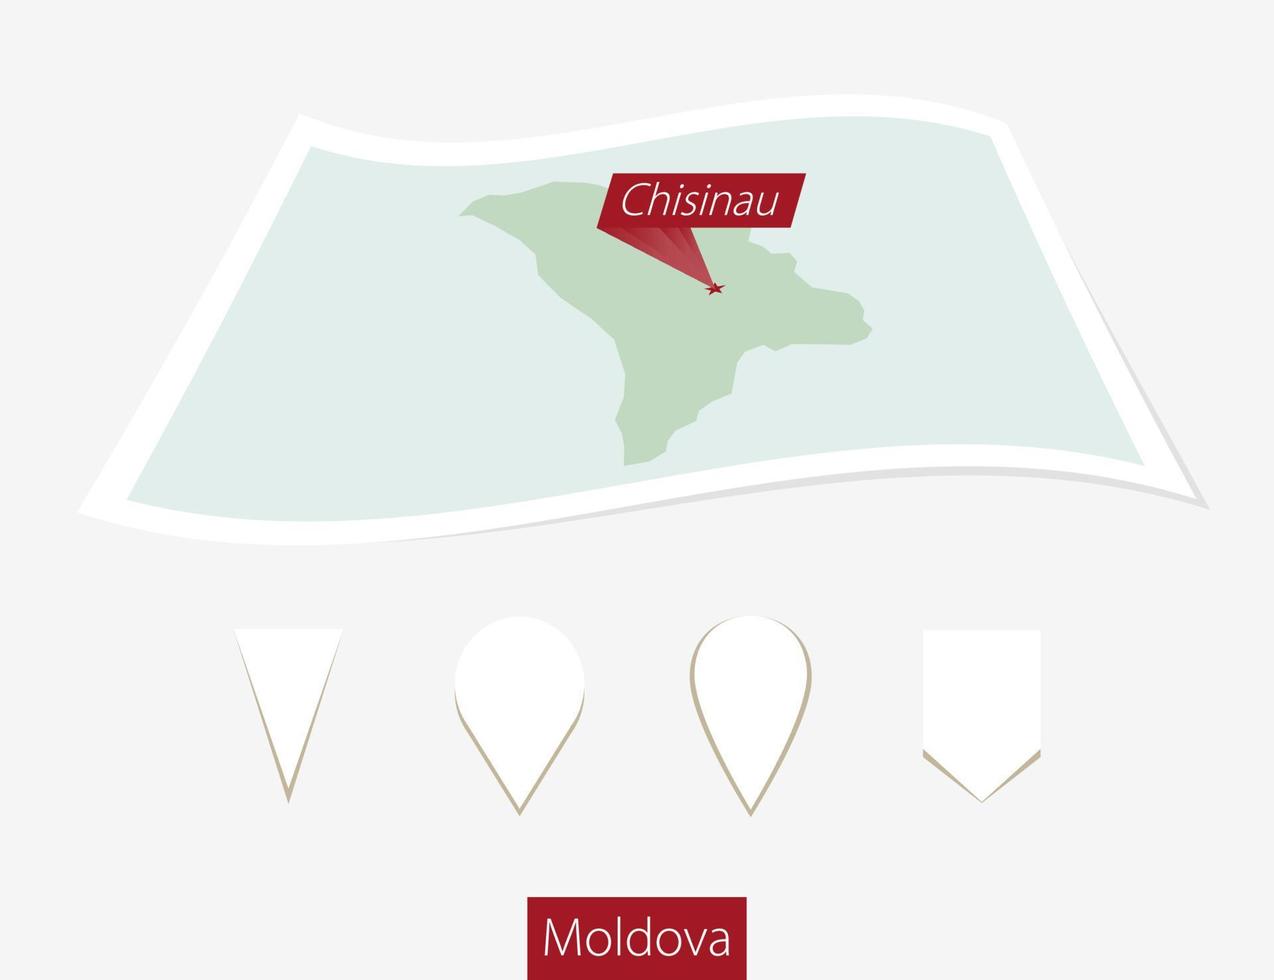 gebogen Papier Karte von Moldau mit Hauptstadt Chisinau auf grau Hintergrund. vier anders Karte Stift Satz. vektor